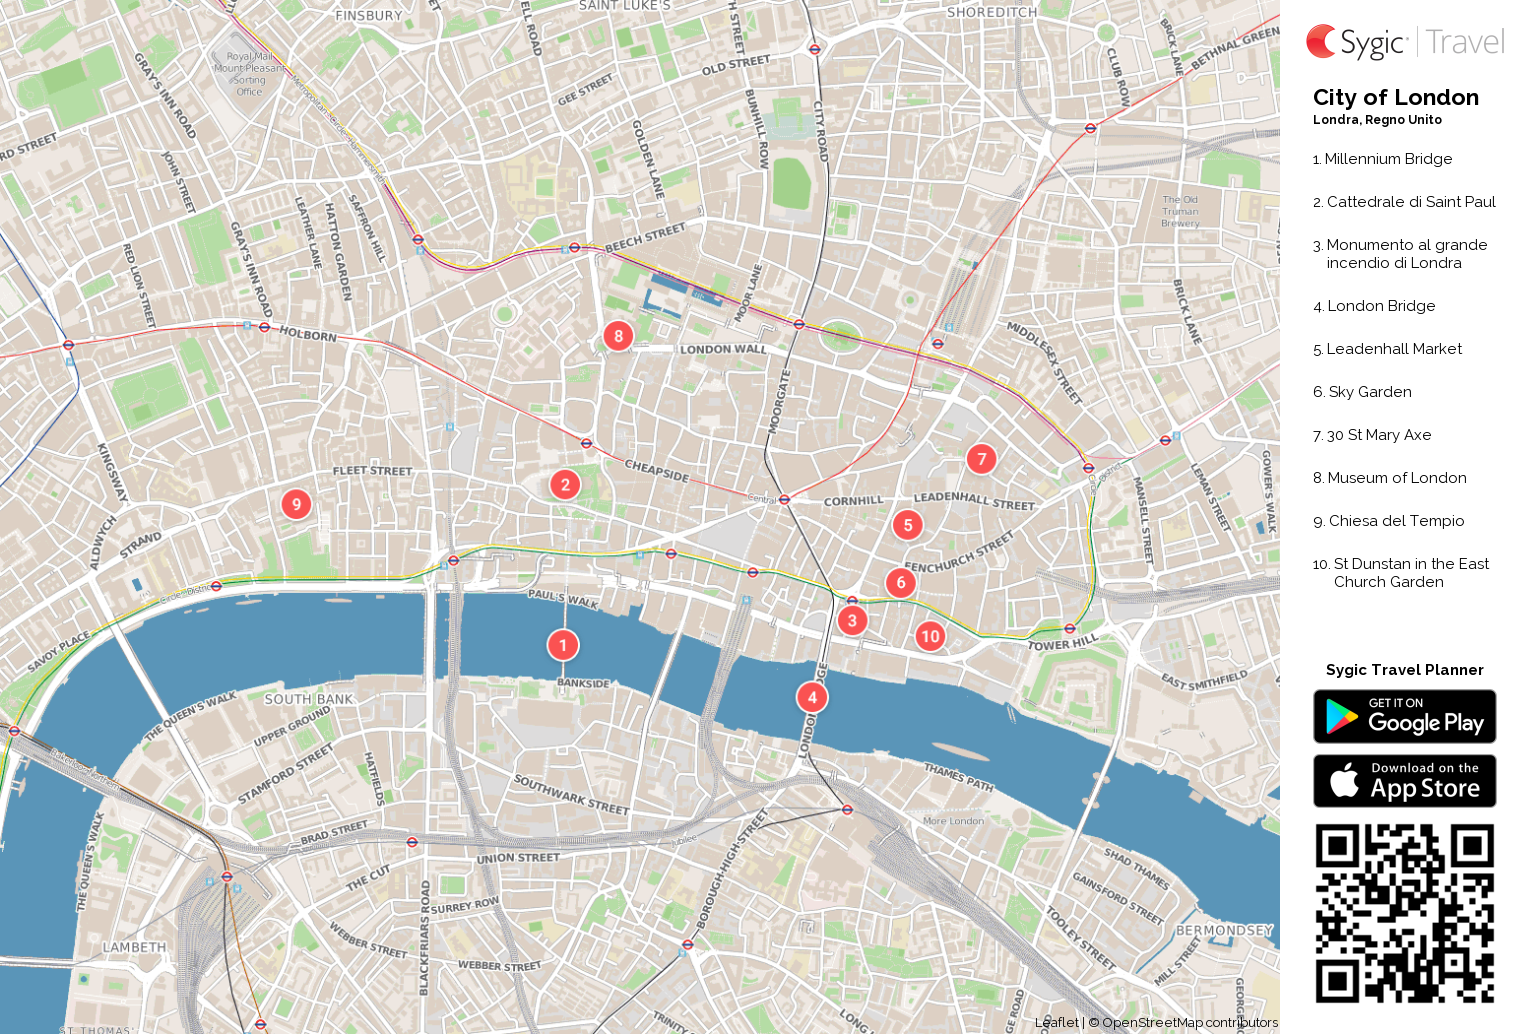 city-of-london-mappa-turistica-da-stampare